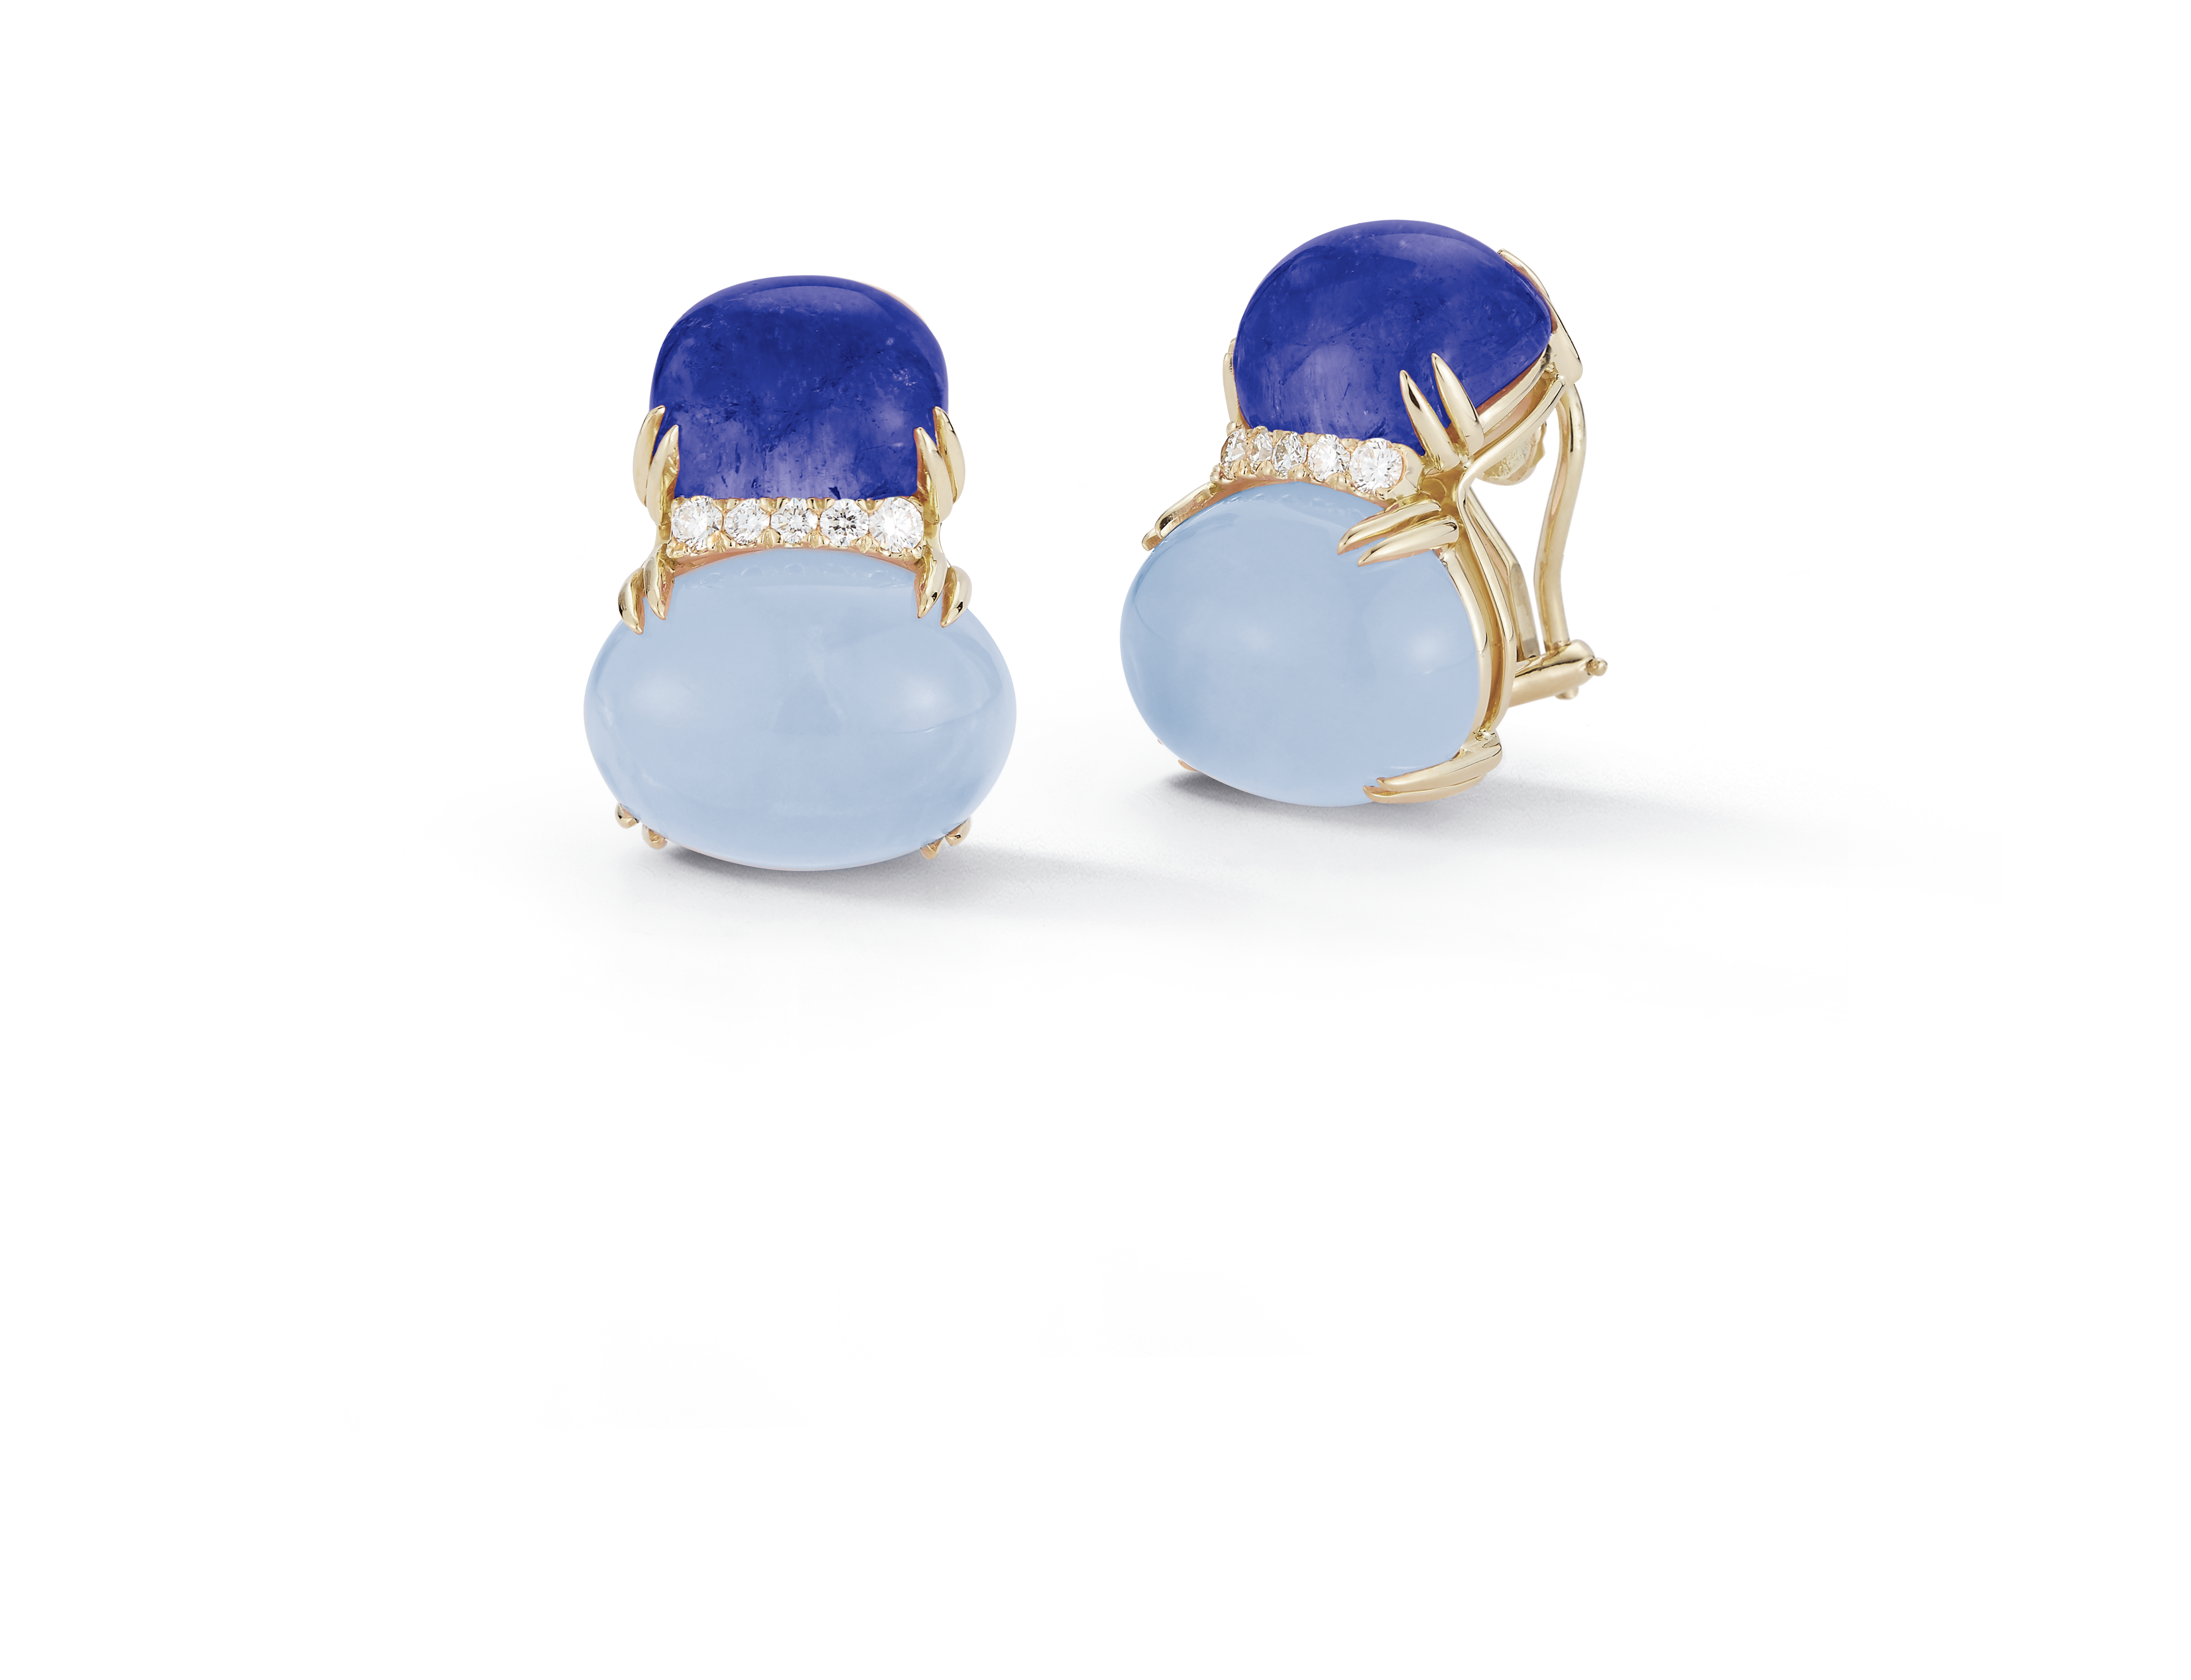 Double Cab Earrings in Blue